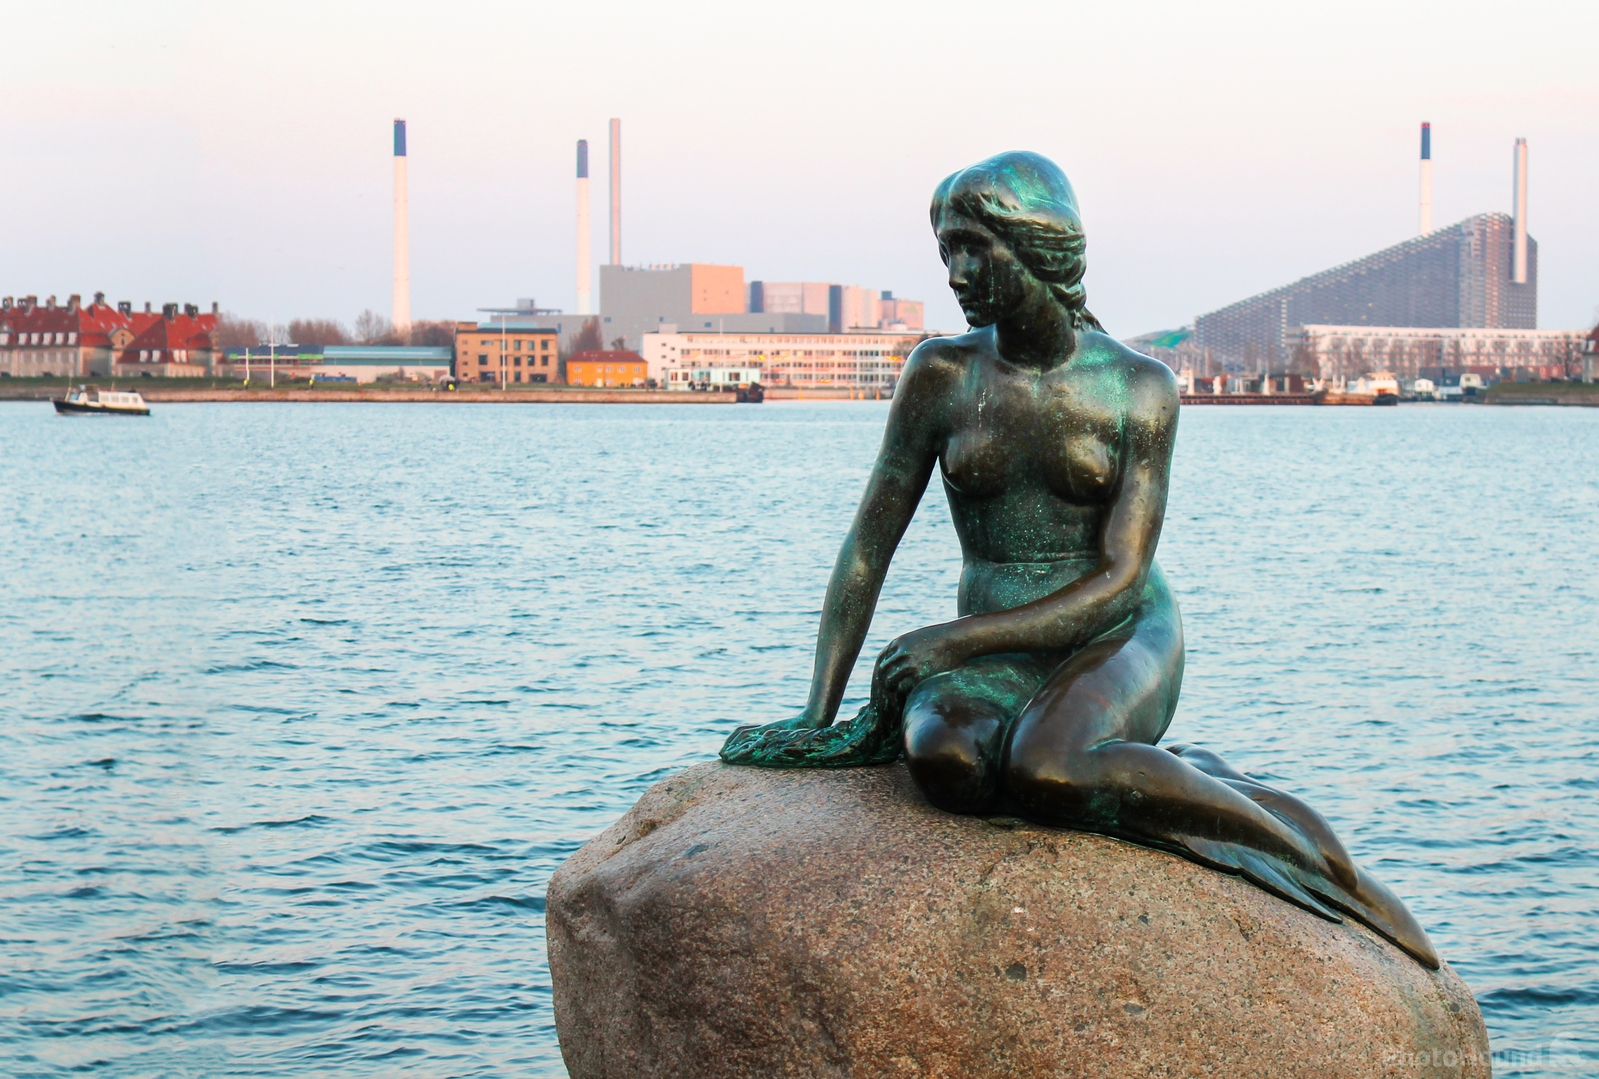 Image of Lille Havfrue (Little Mermaid) - København by Team PhotoHound